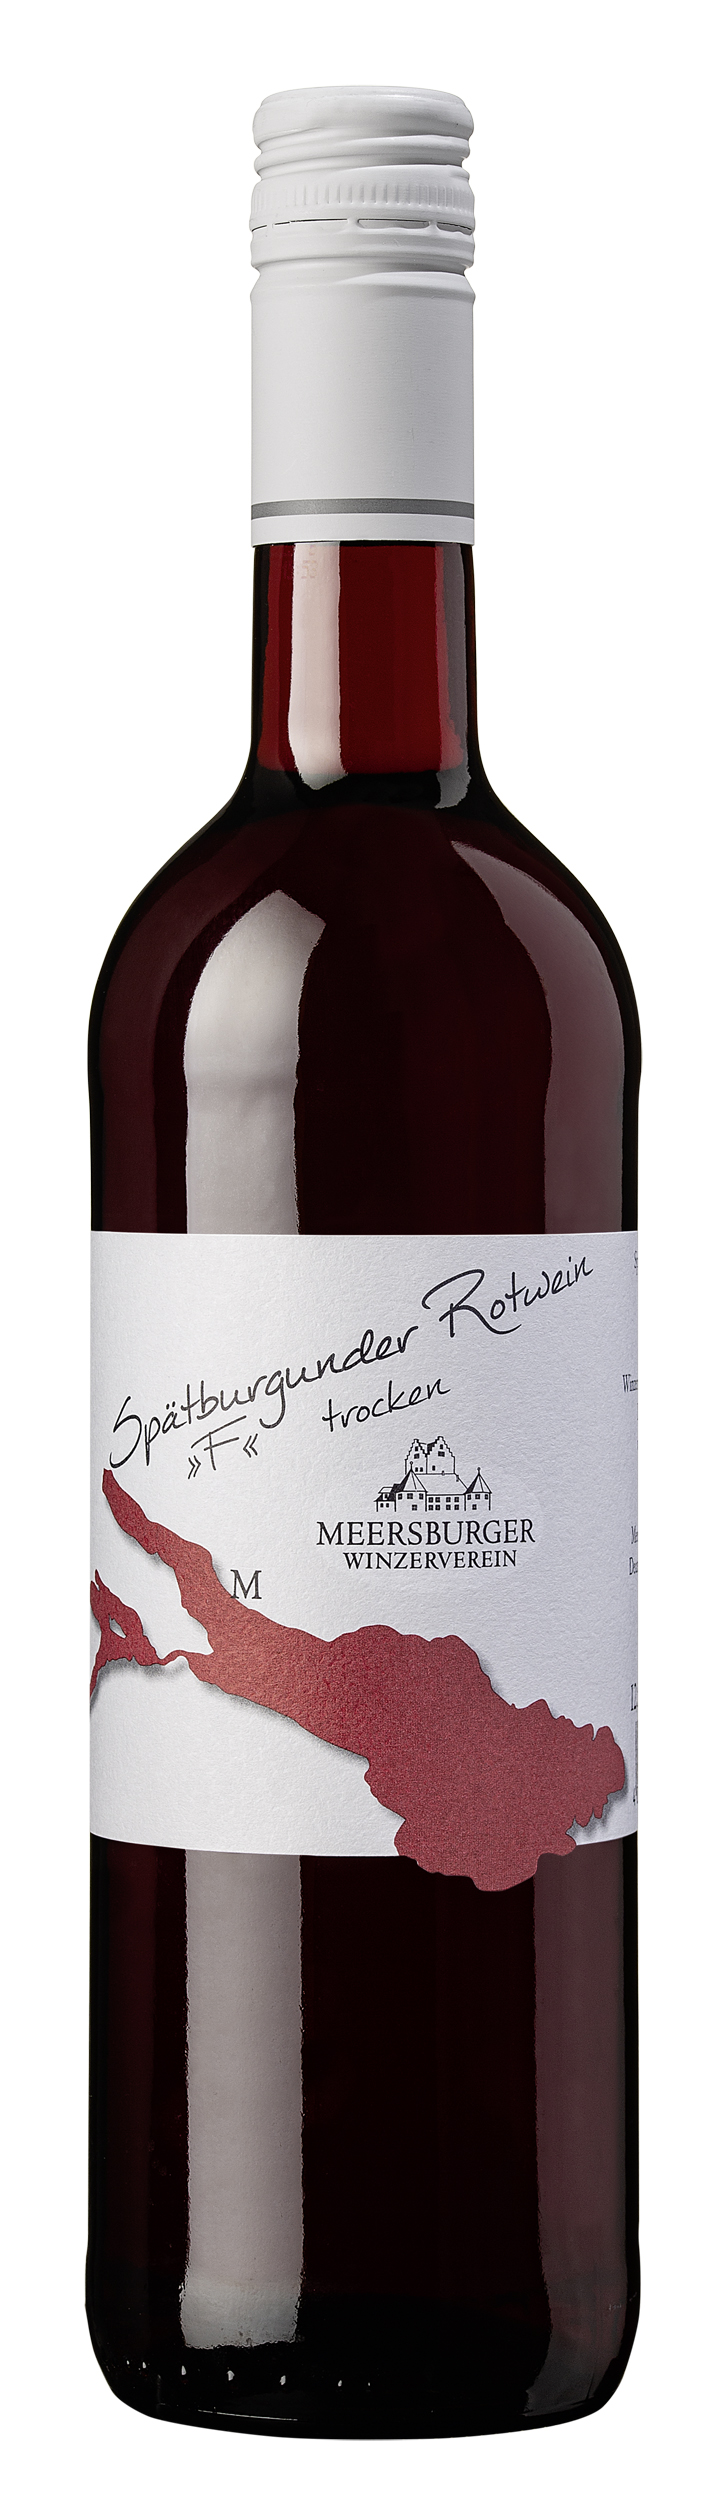 Spätburgunder Rotwein trocken | Rotwein | Winzerverein Meersburg